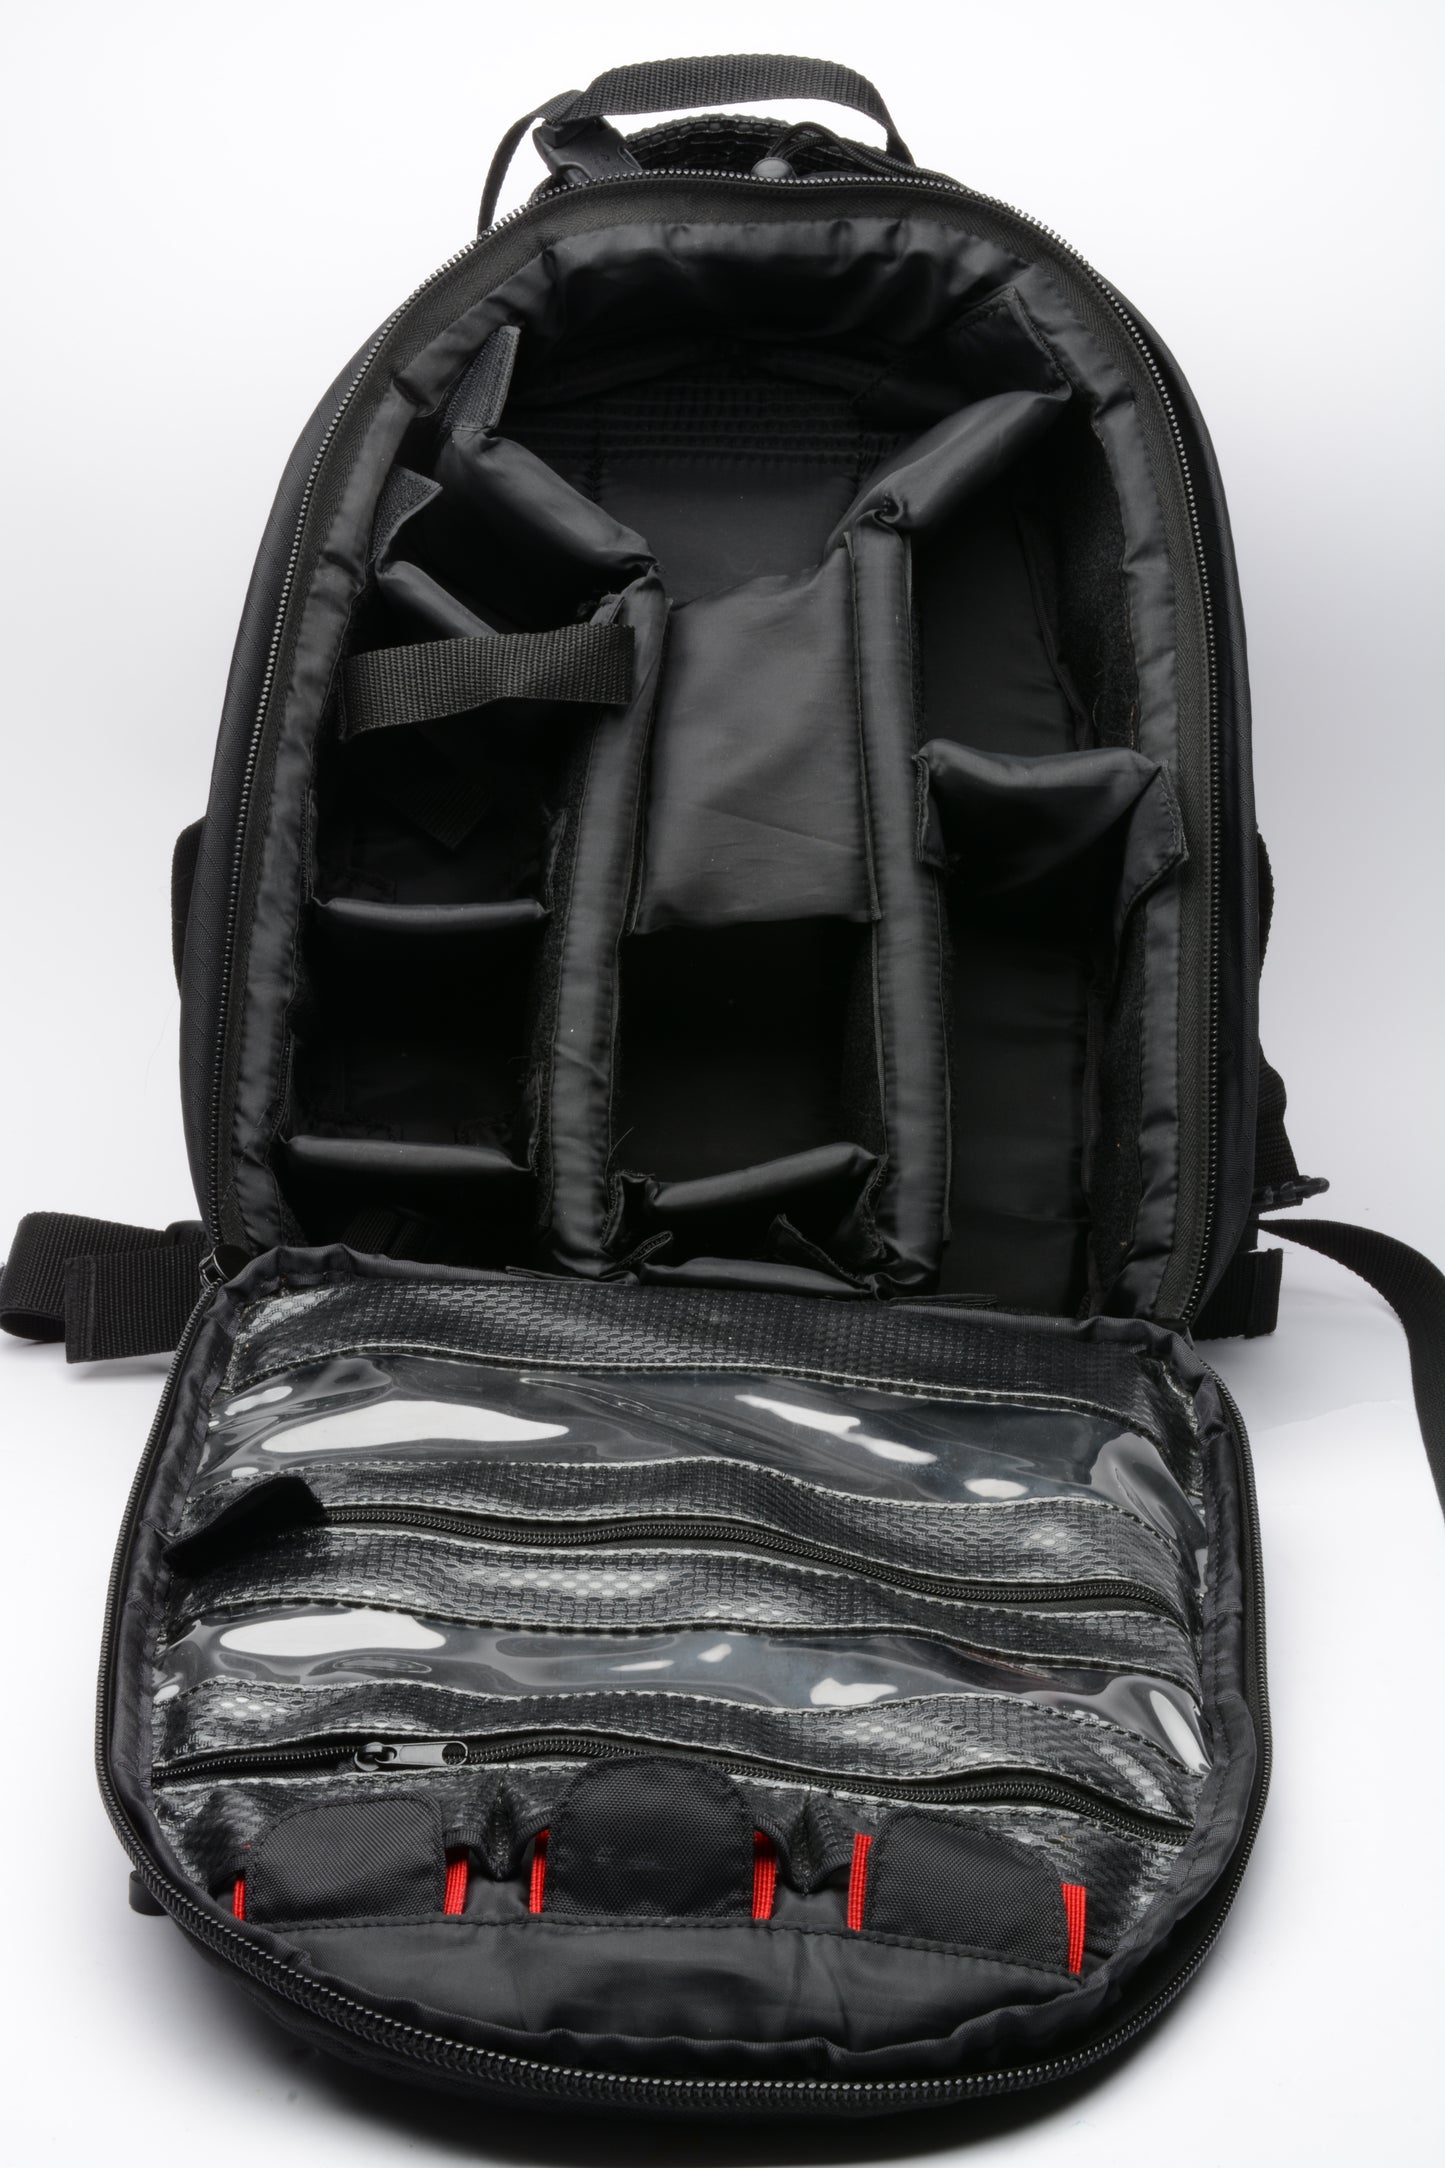 Tamrac 5375 Adventure 75 Backpack (Gray/Black), clean, nice!